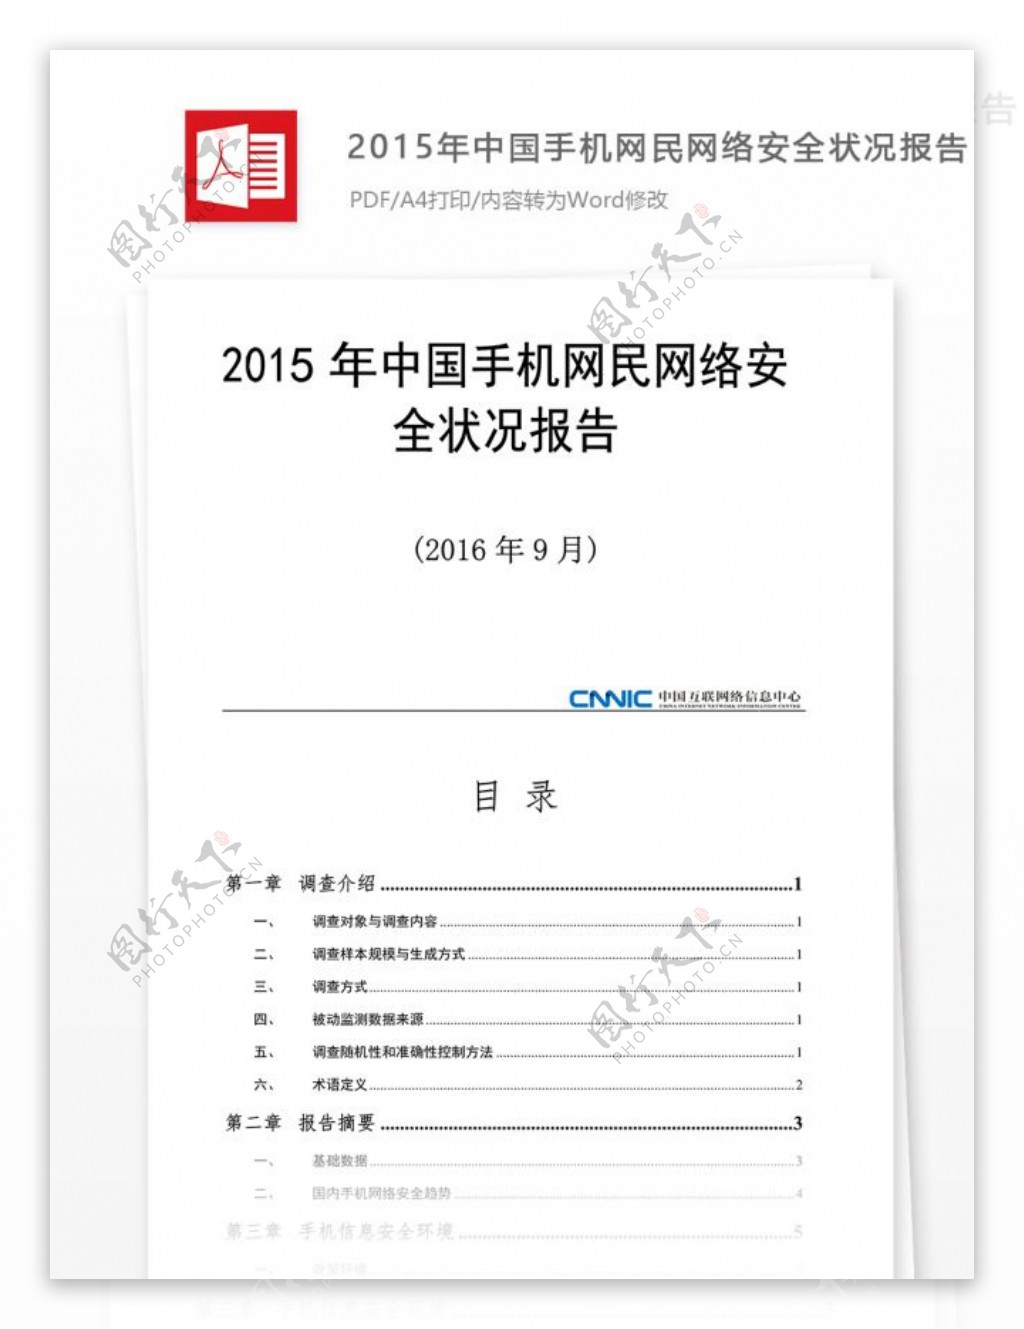 2015年中国手机网民网络安全状况报告